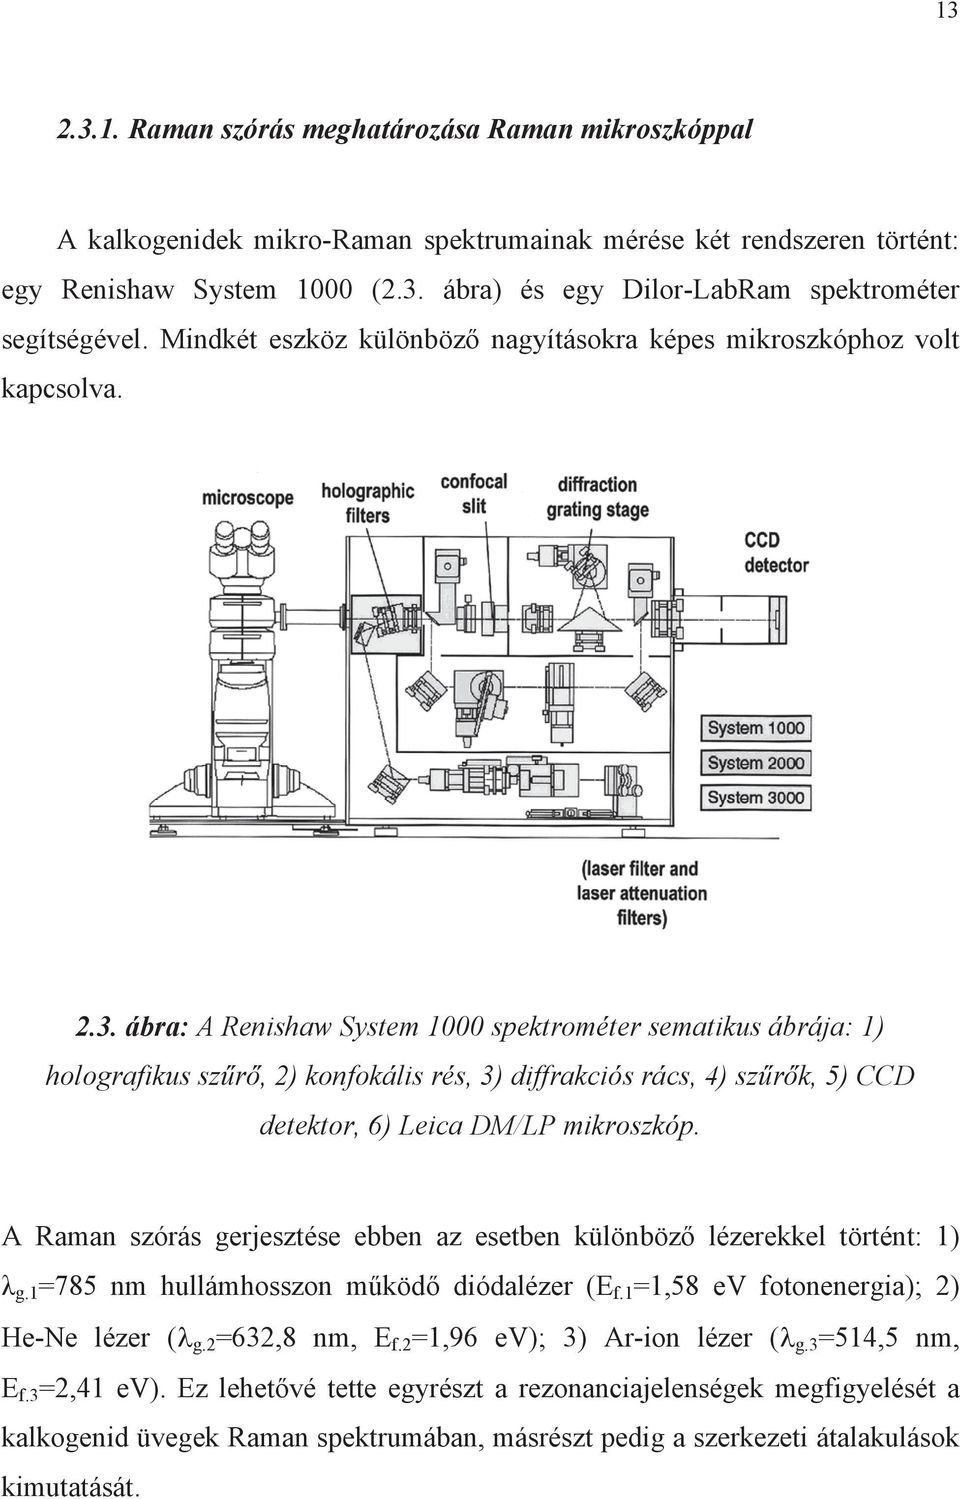 ábra: A Renshaw System 1000 spektrométer sematkus ábrája: 1) holografkus szr, ) konfokáls rés, 3) dffrakcós rács, 4) szrk, 5) CCD detektor, 6) Leca DM/LP mkroszkóp.